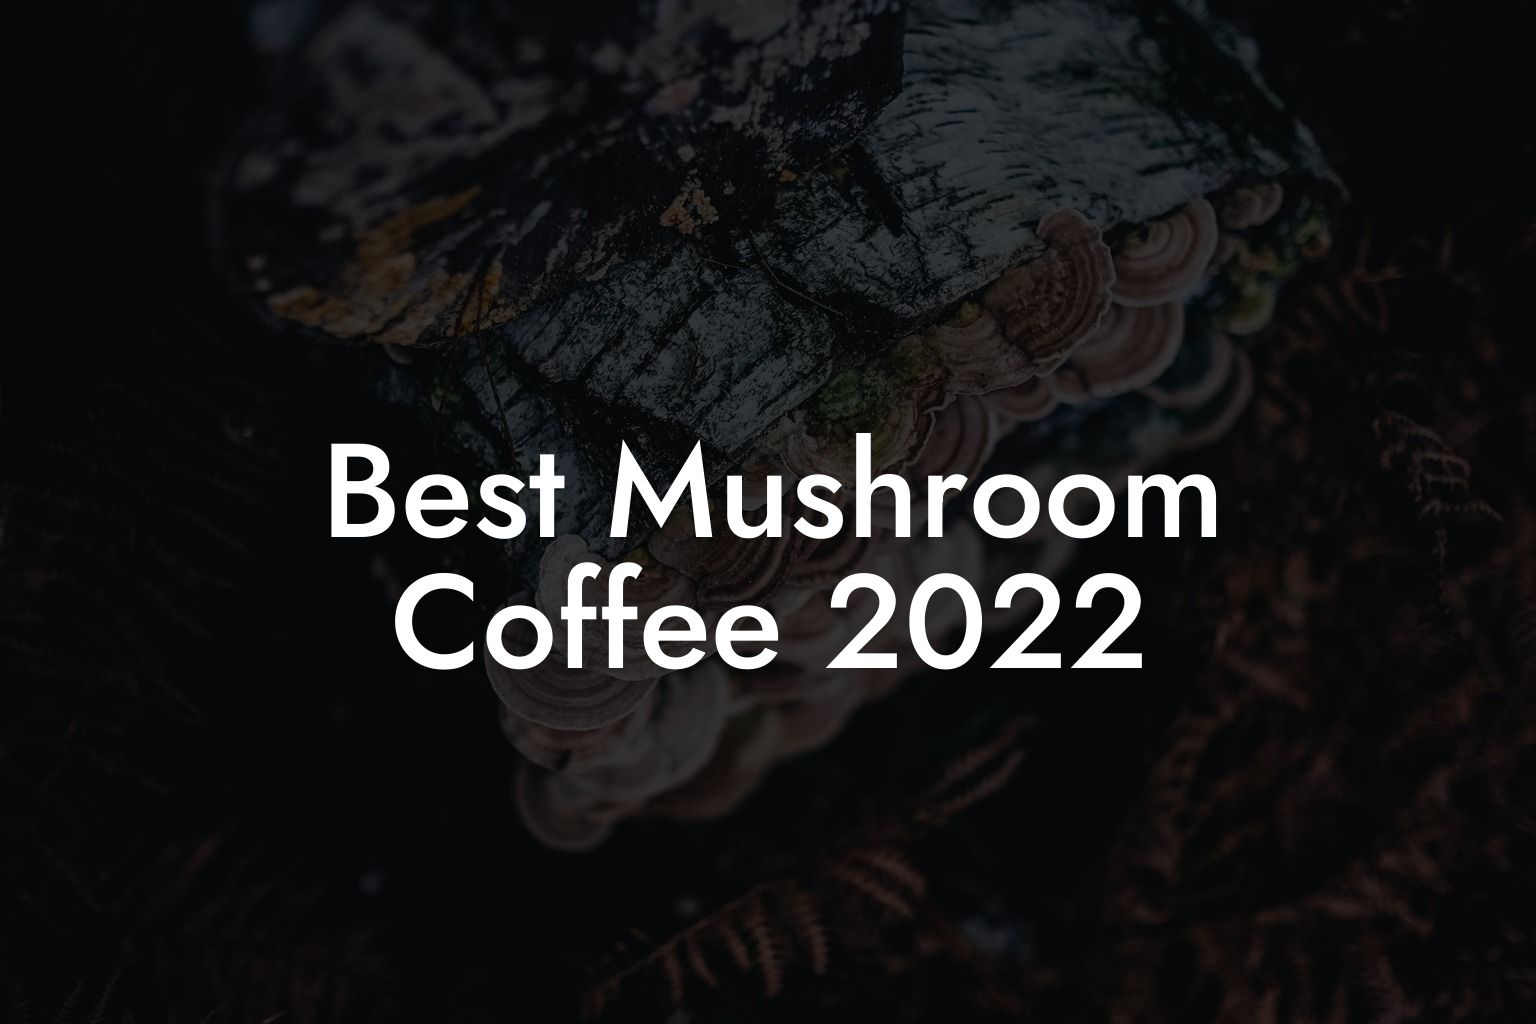 Best Mushroom Coffee 2022